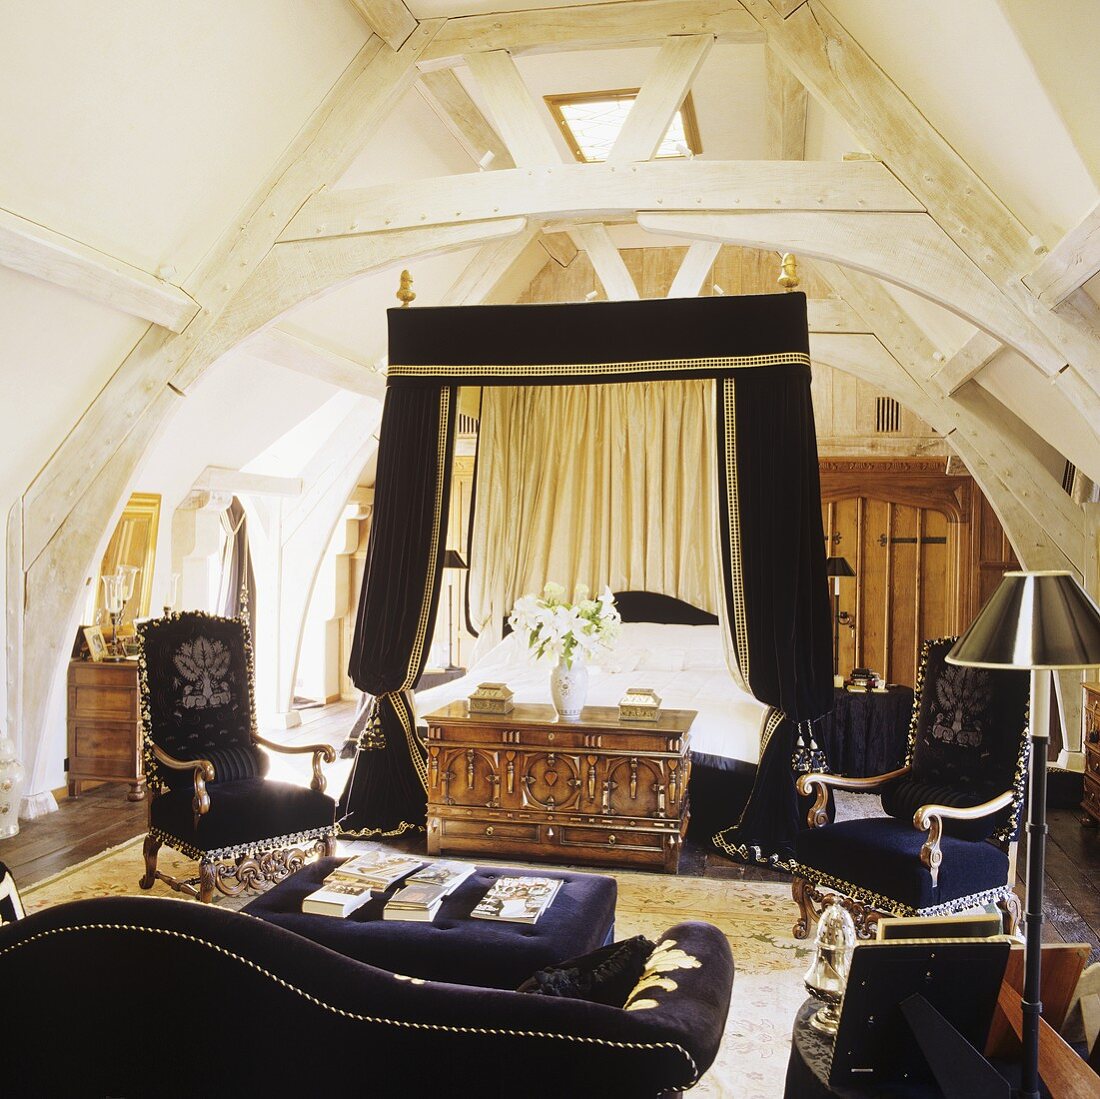 Himmelbett mit schwarzem Baldachin und schwarzer Sofagarnitur unter alter weisser Dachstuhlkonstruktion